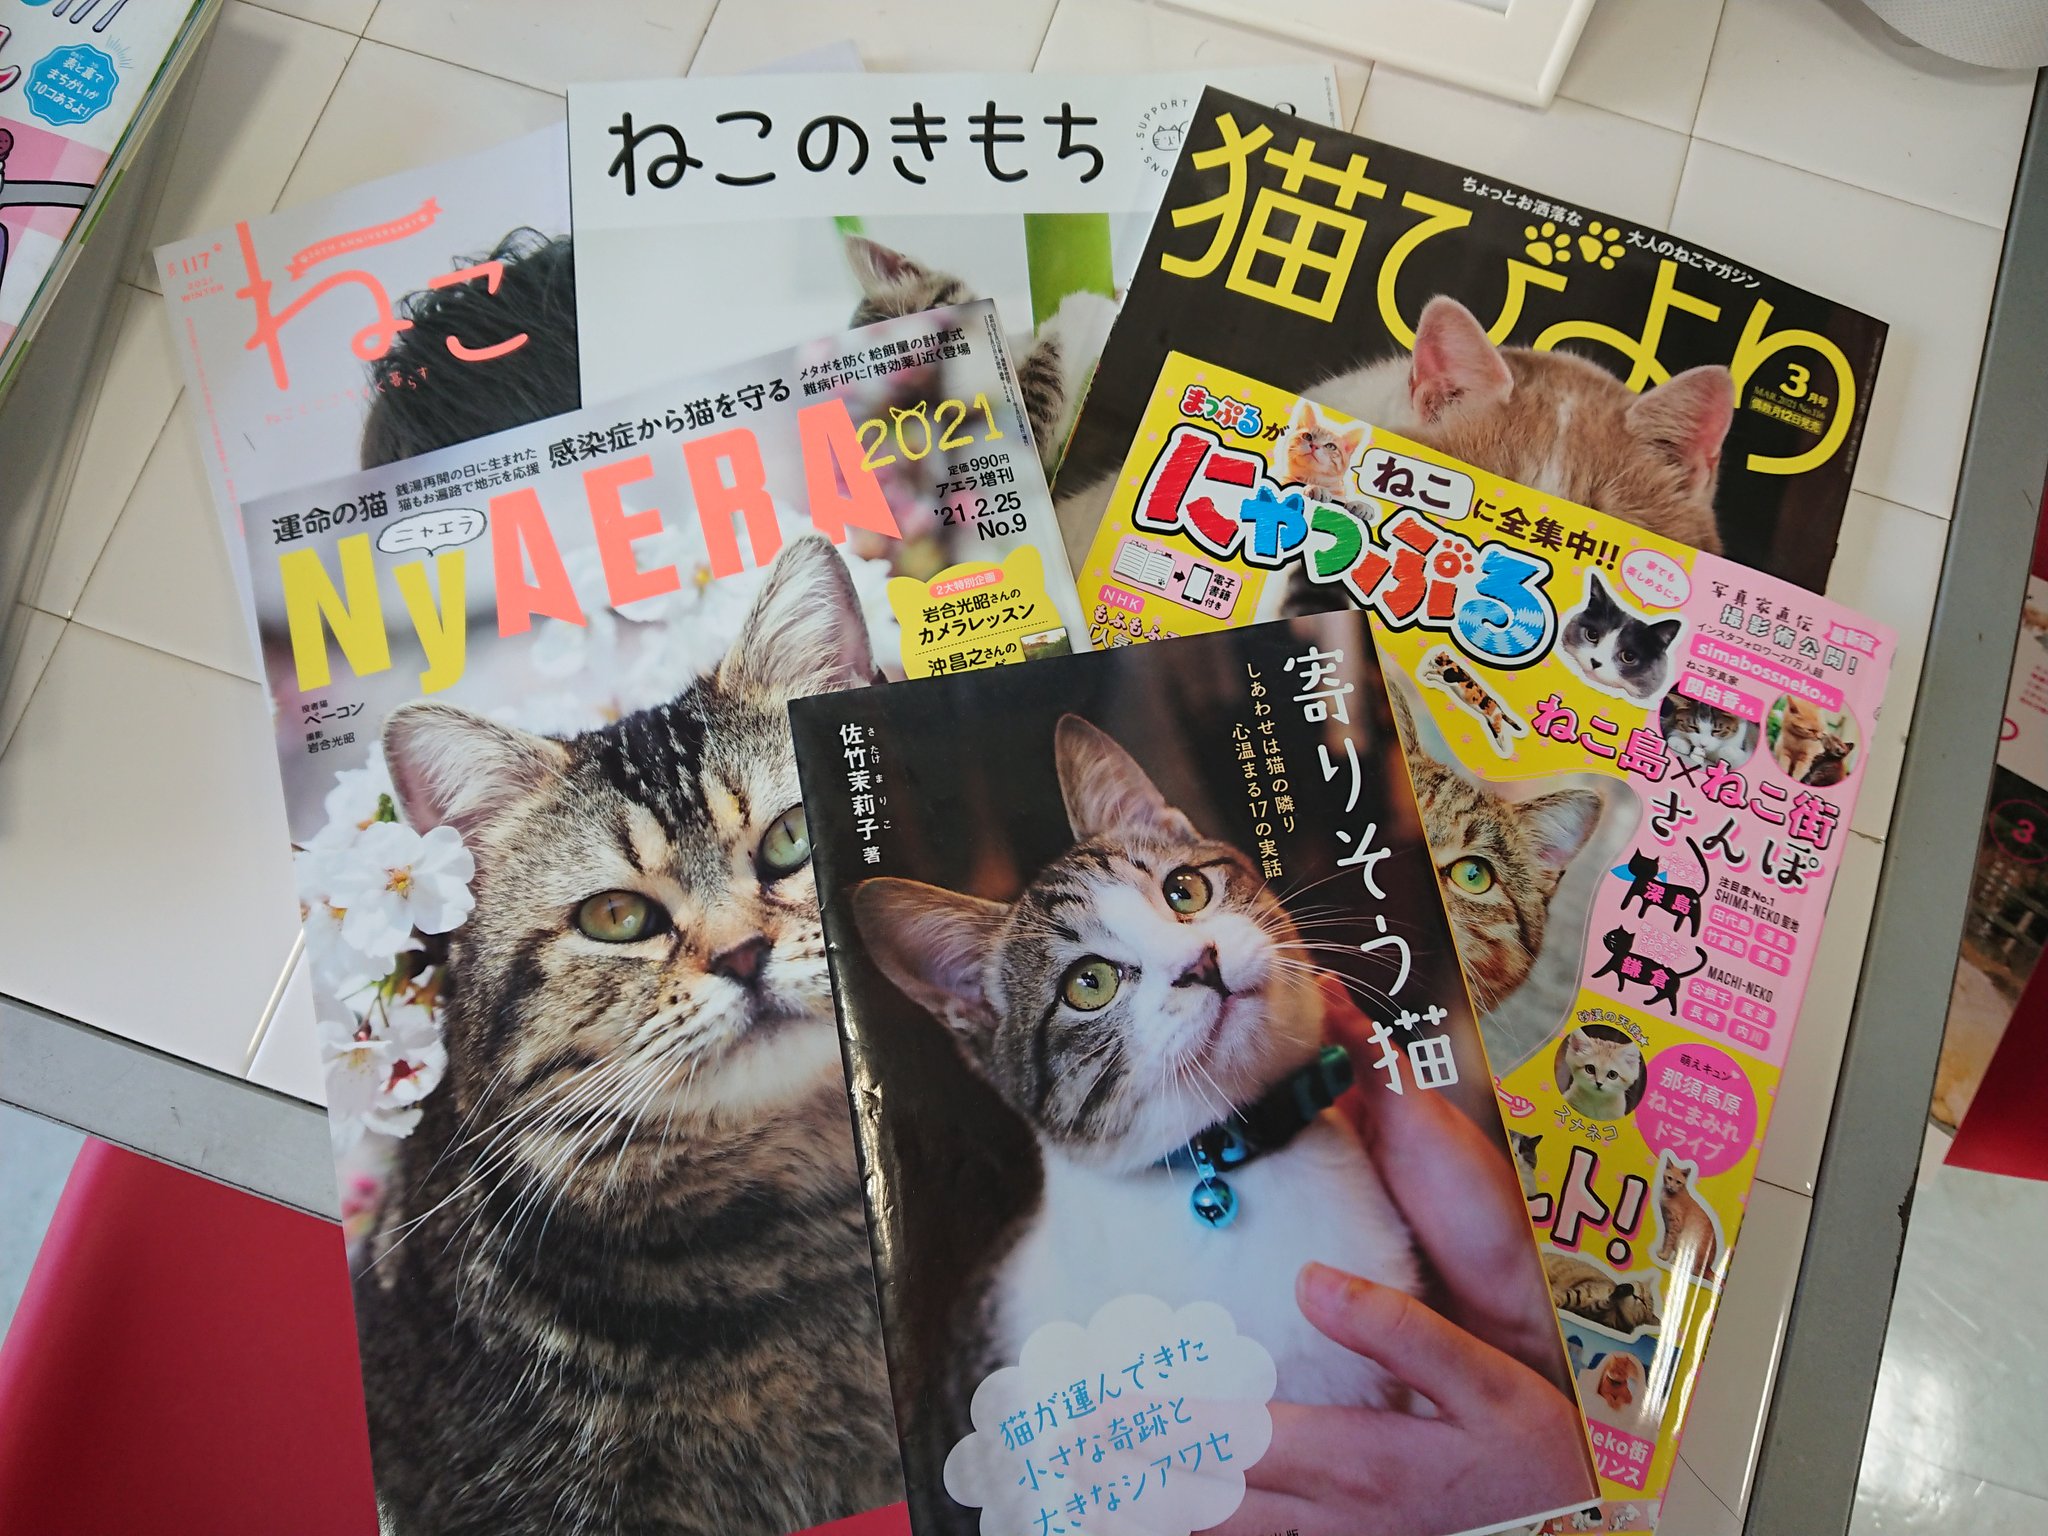 تويتر 美容室jam 公式 على تويتر 現在 ヘアカタログの雑誌は置いておりませんが おそらく 日本で一番 猫雑誌を置いている人間のための美容院です 笑 猫の日 猫雑誌 ねこ ねこのきもち 猫びより Nyaera にゃっぷる 猫好きさんと繋がりたい 猫がいる美容